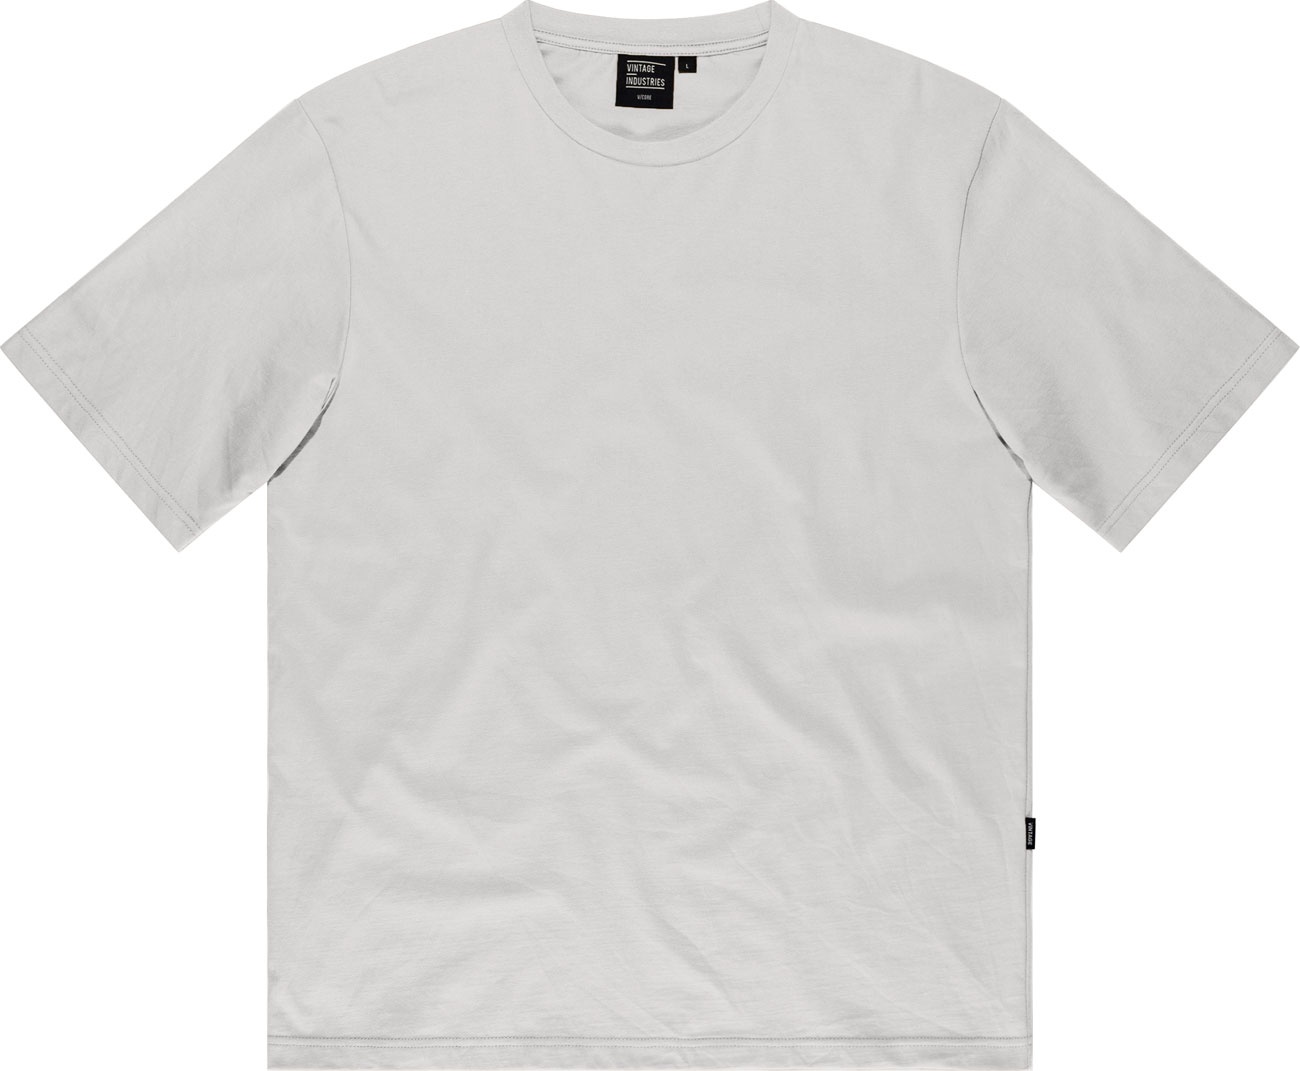 Vintage Industries Lex, t-shirt - Blanc - L